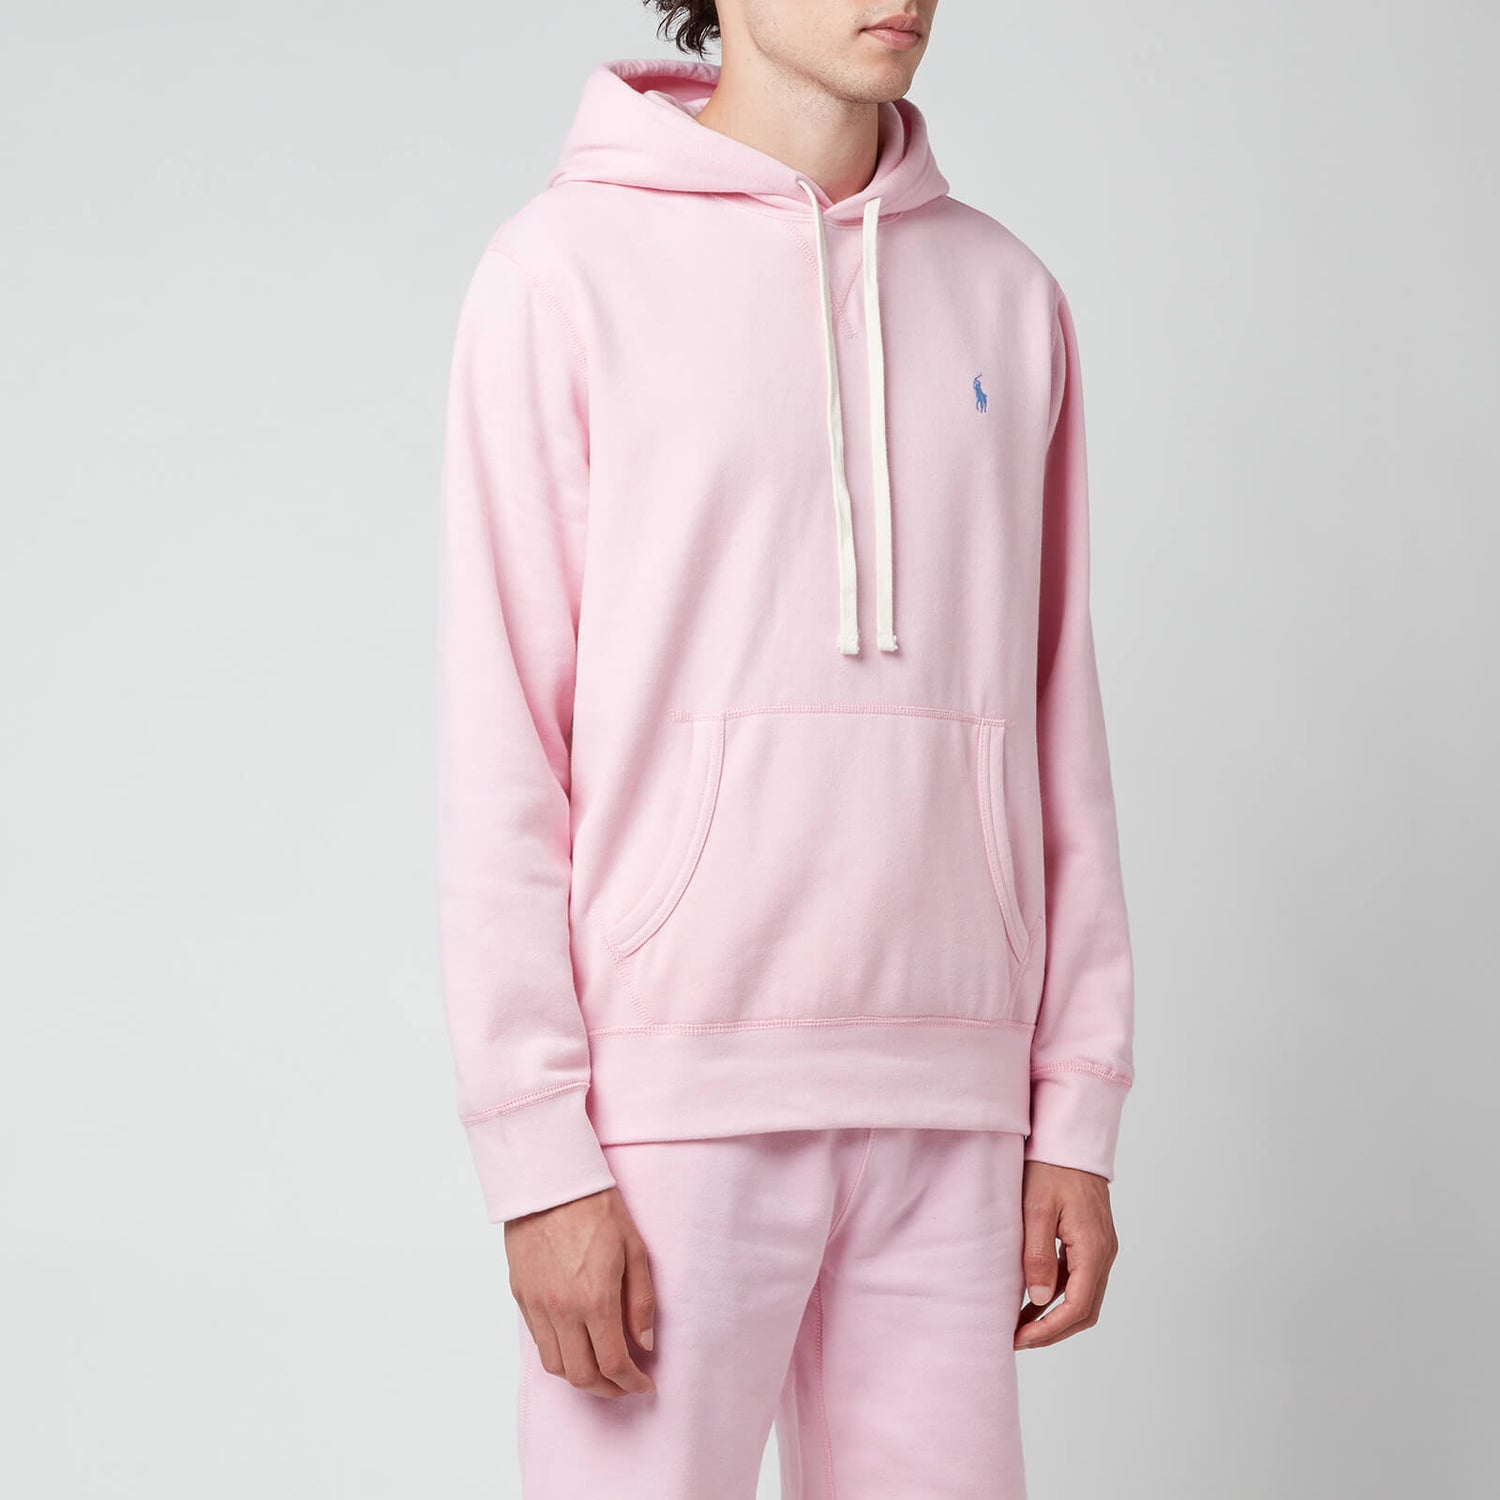 Polo Ralph Lauren Men's Fleece Hoodie - Carmel Pink - S